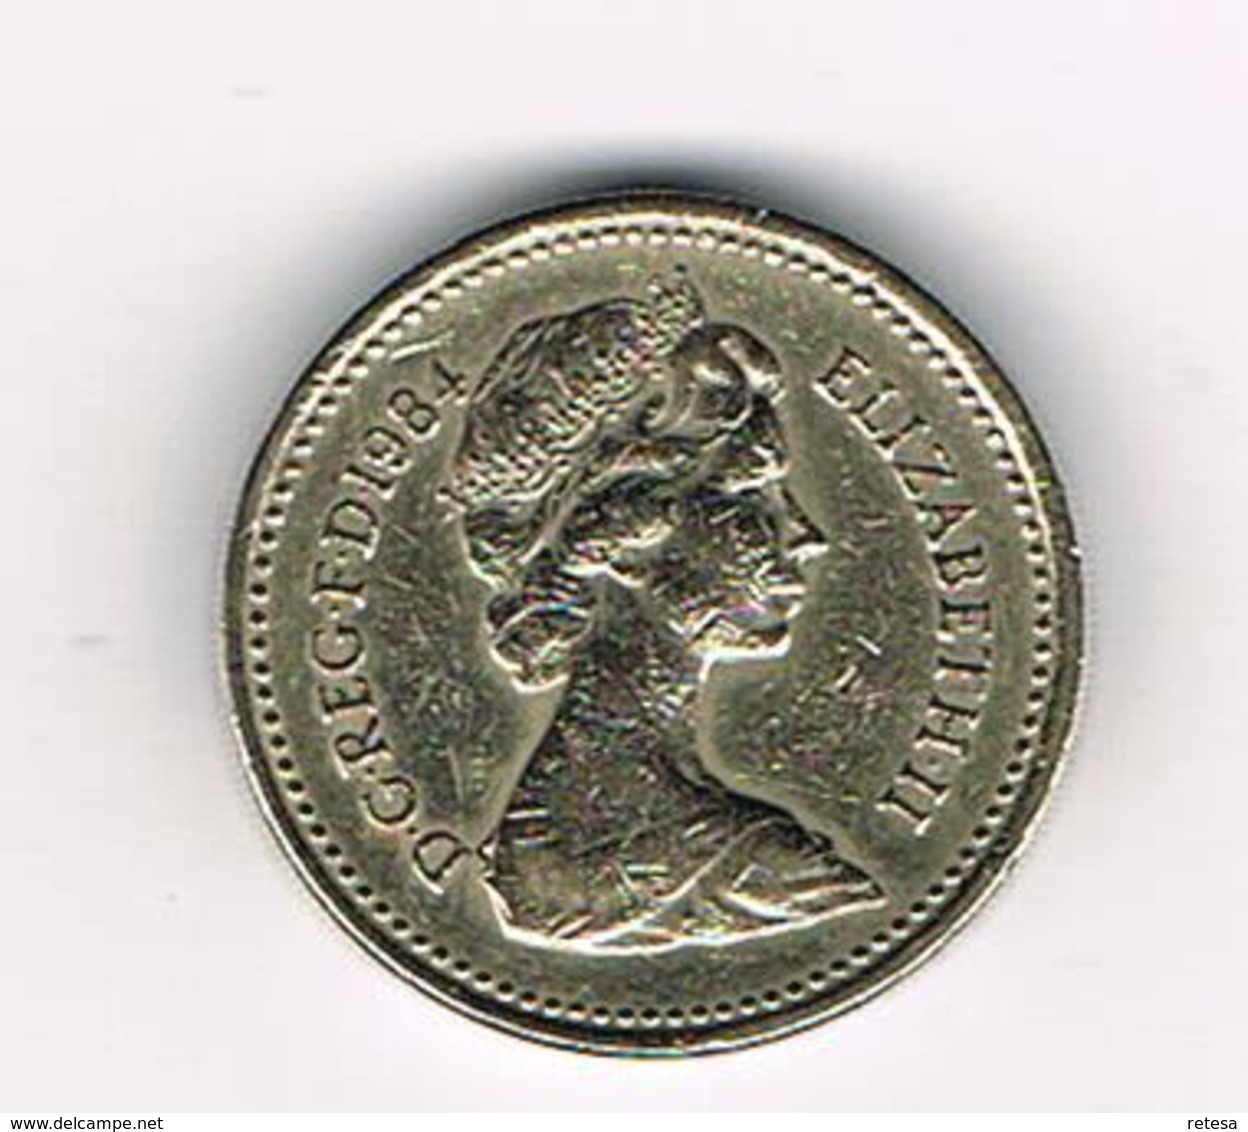 /  GREAT BRITAIN  1 POUND   1984  SCOTTISH  THISTLE - 1 Pound